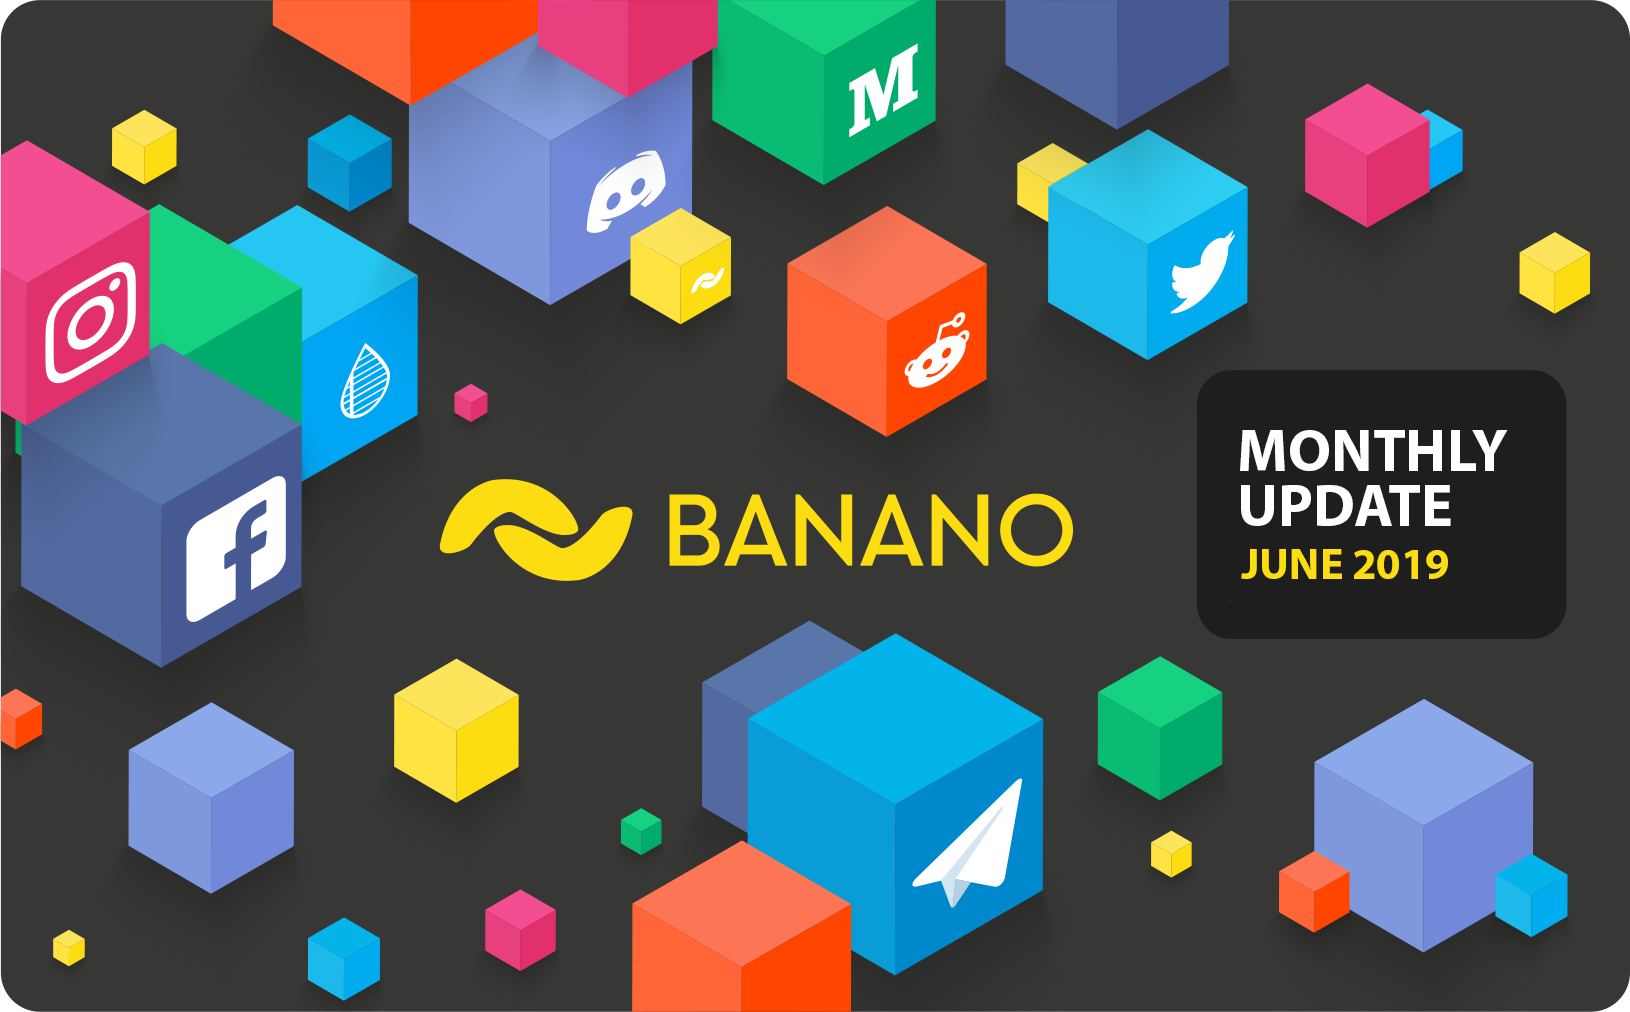 BANANO Monthly Update June 2019